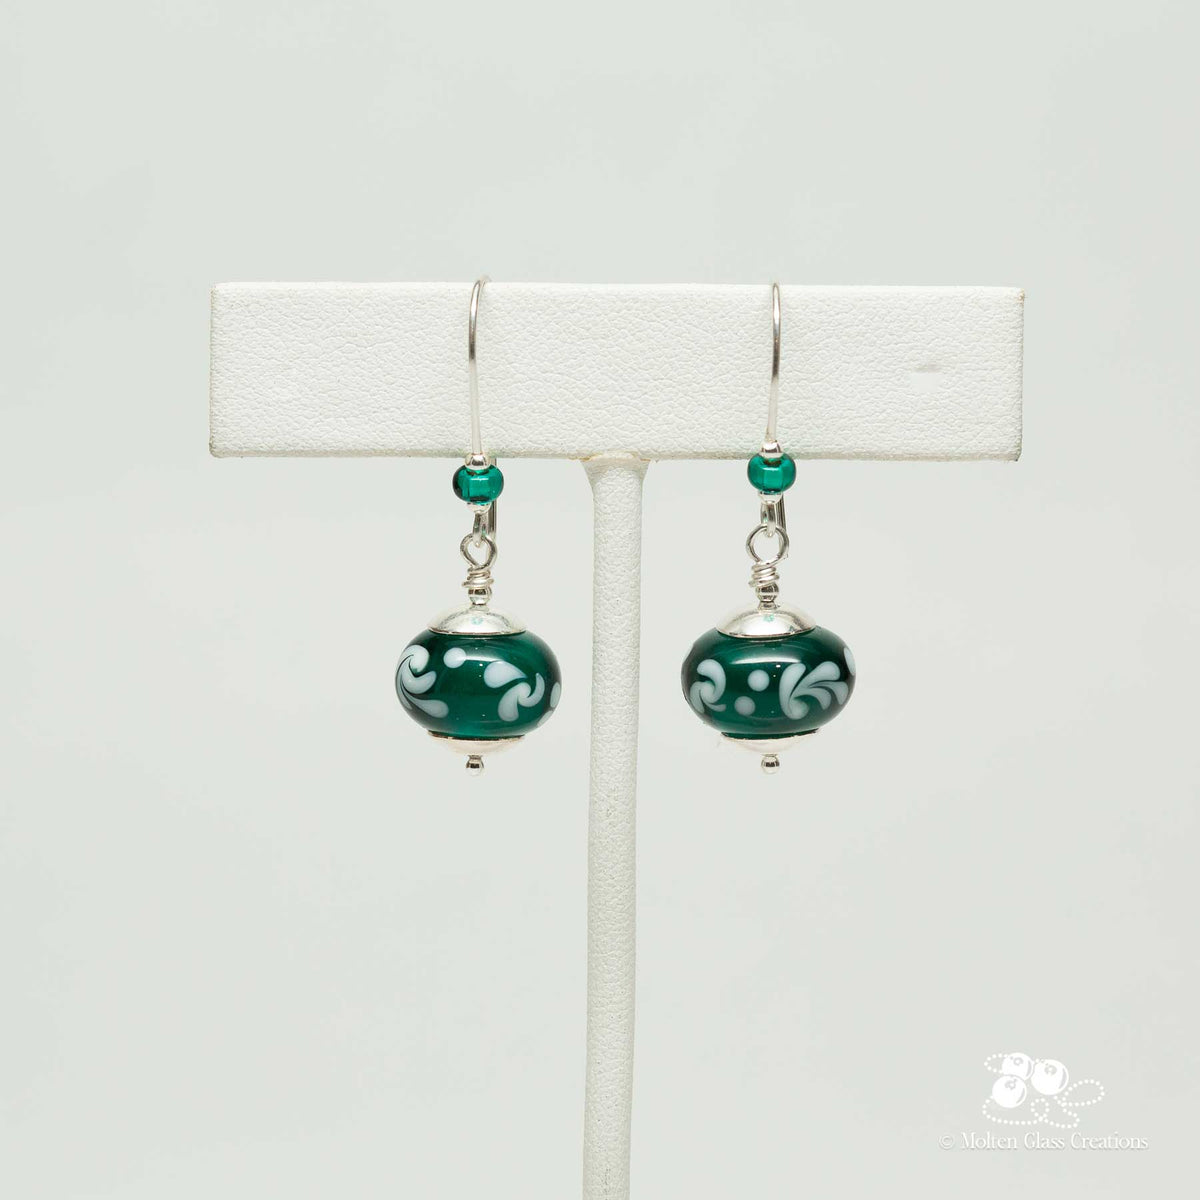 Emerald Green Glass Bead Earrings - Molten Glass Creations